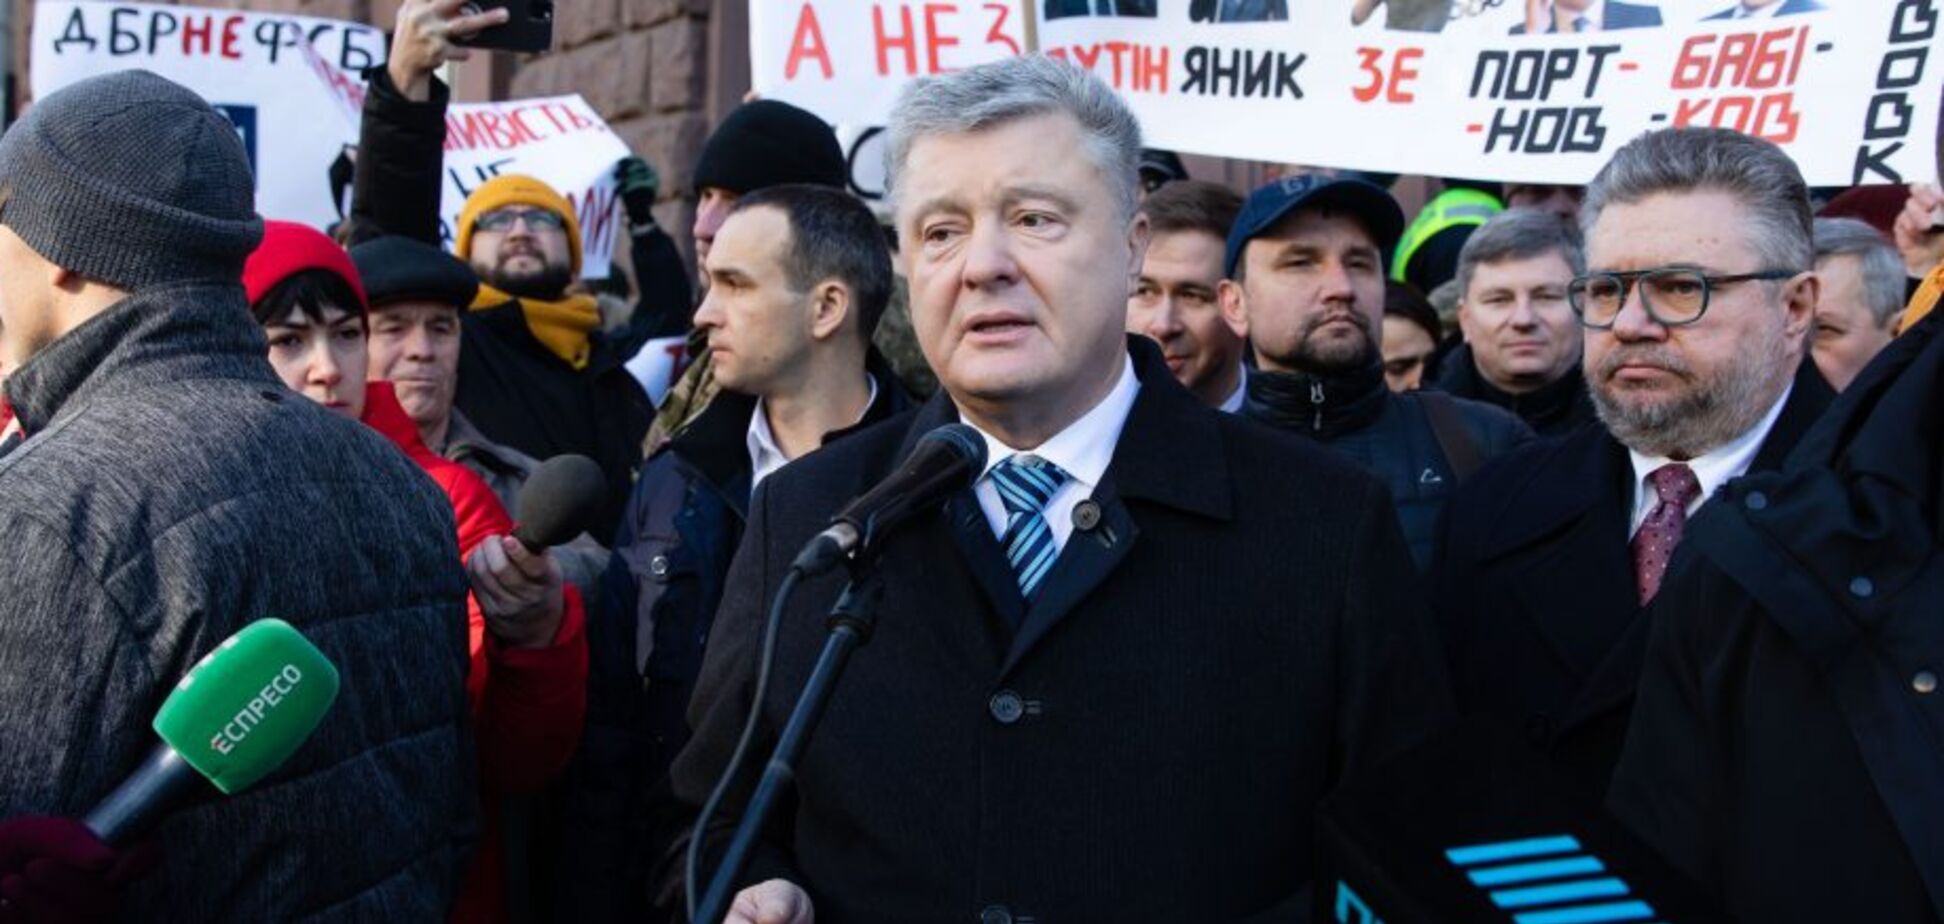 Порошенко призвал Зеленского прекратить преследование оппозиции